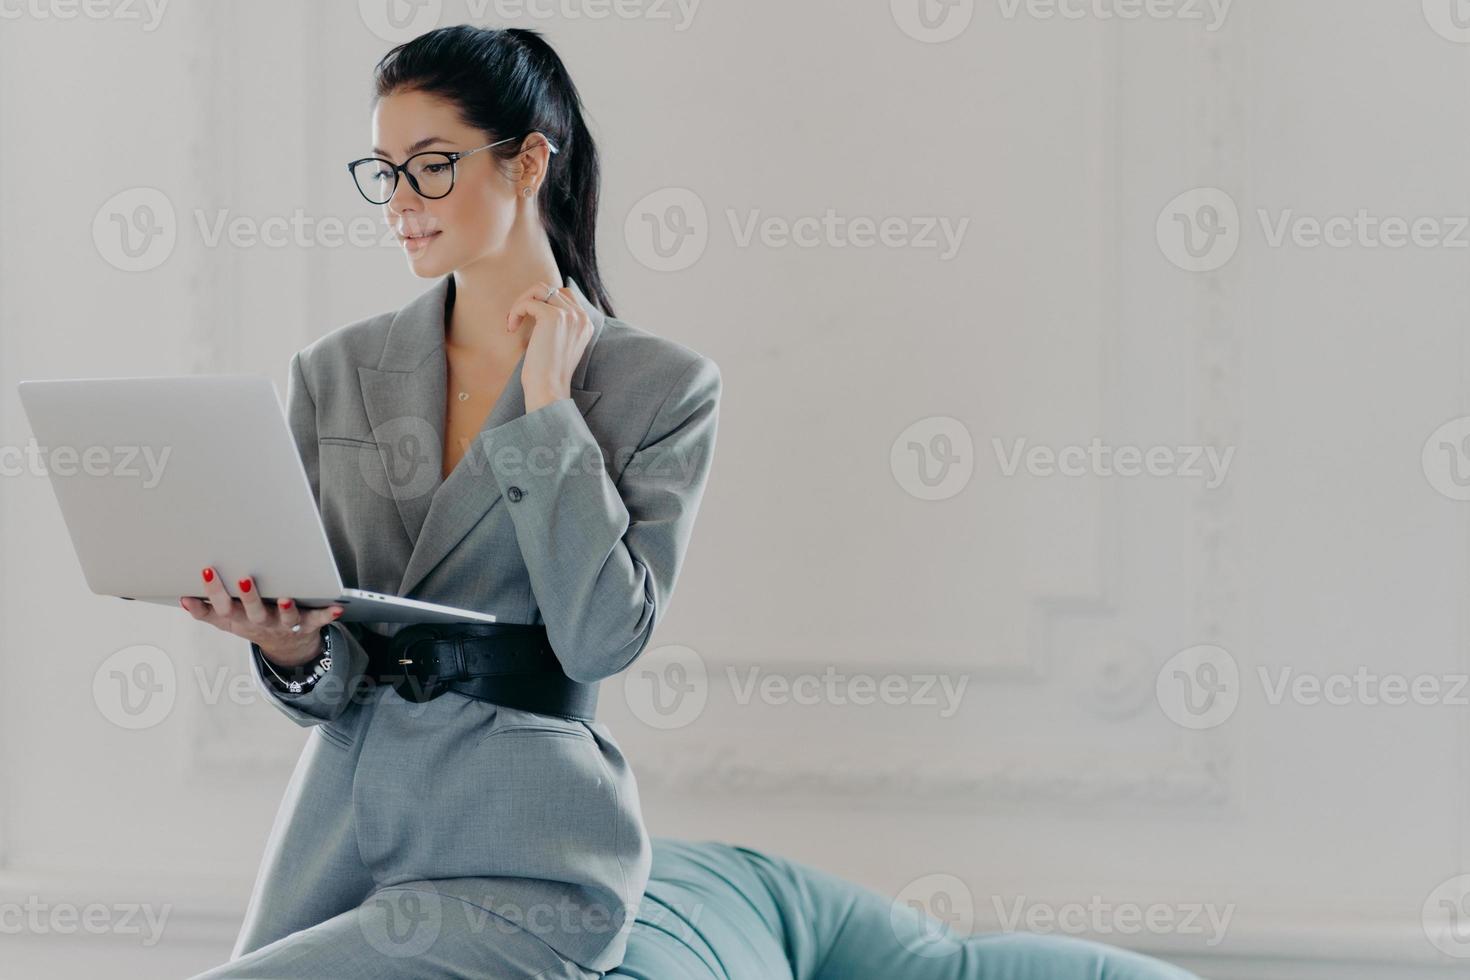 inomhusbild av seriös elegant kvinnlig administratör som jobbar hemifrån, poserar med bärbar dator, tittar på webbseminarium eller läser artikel på internet, lutar sig mot soffan, klädd i snygga affärskläder foto